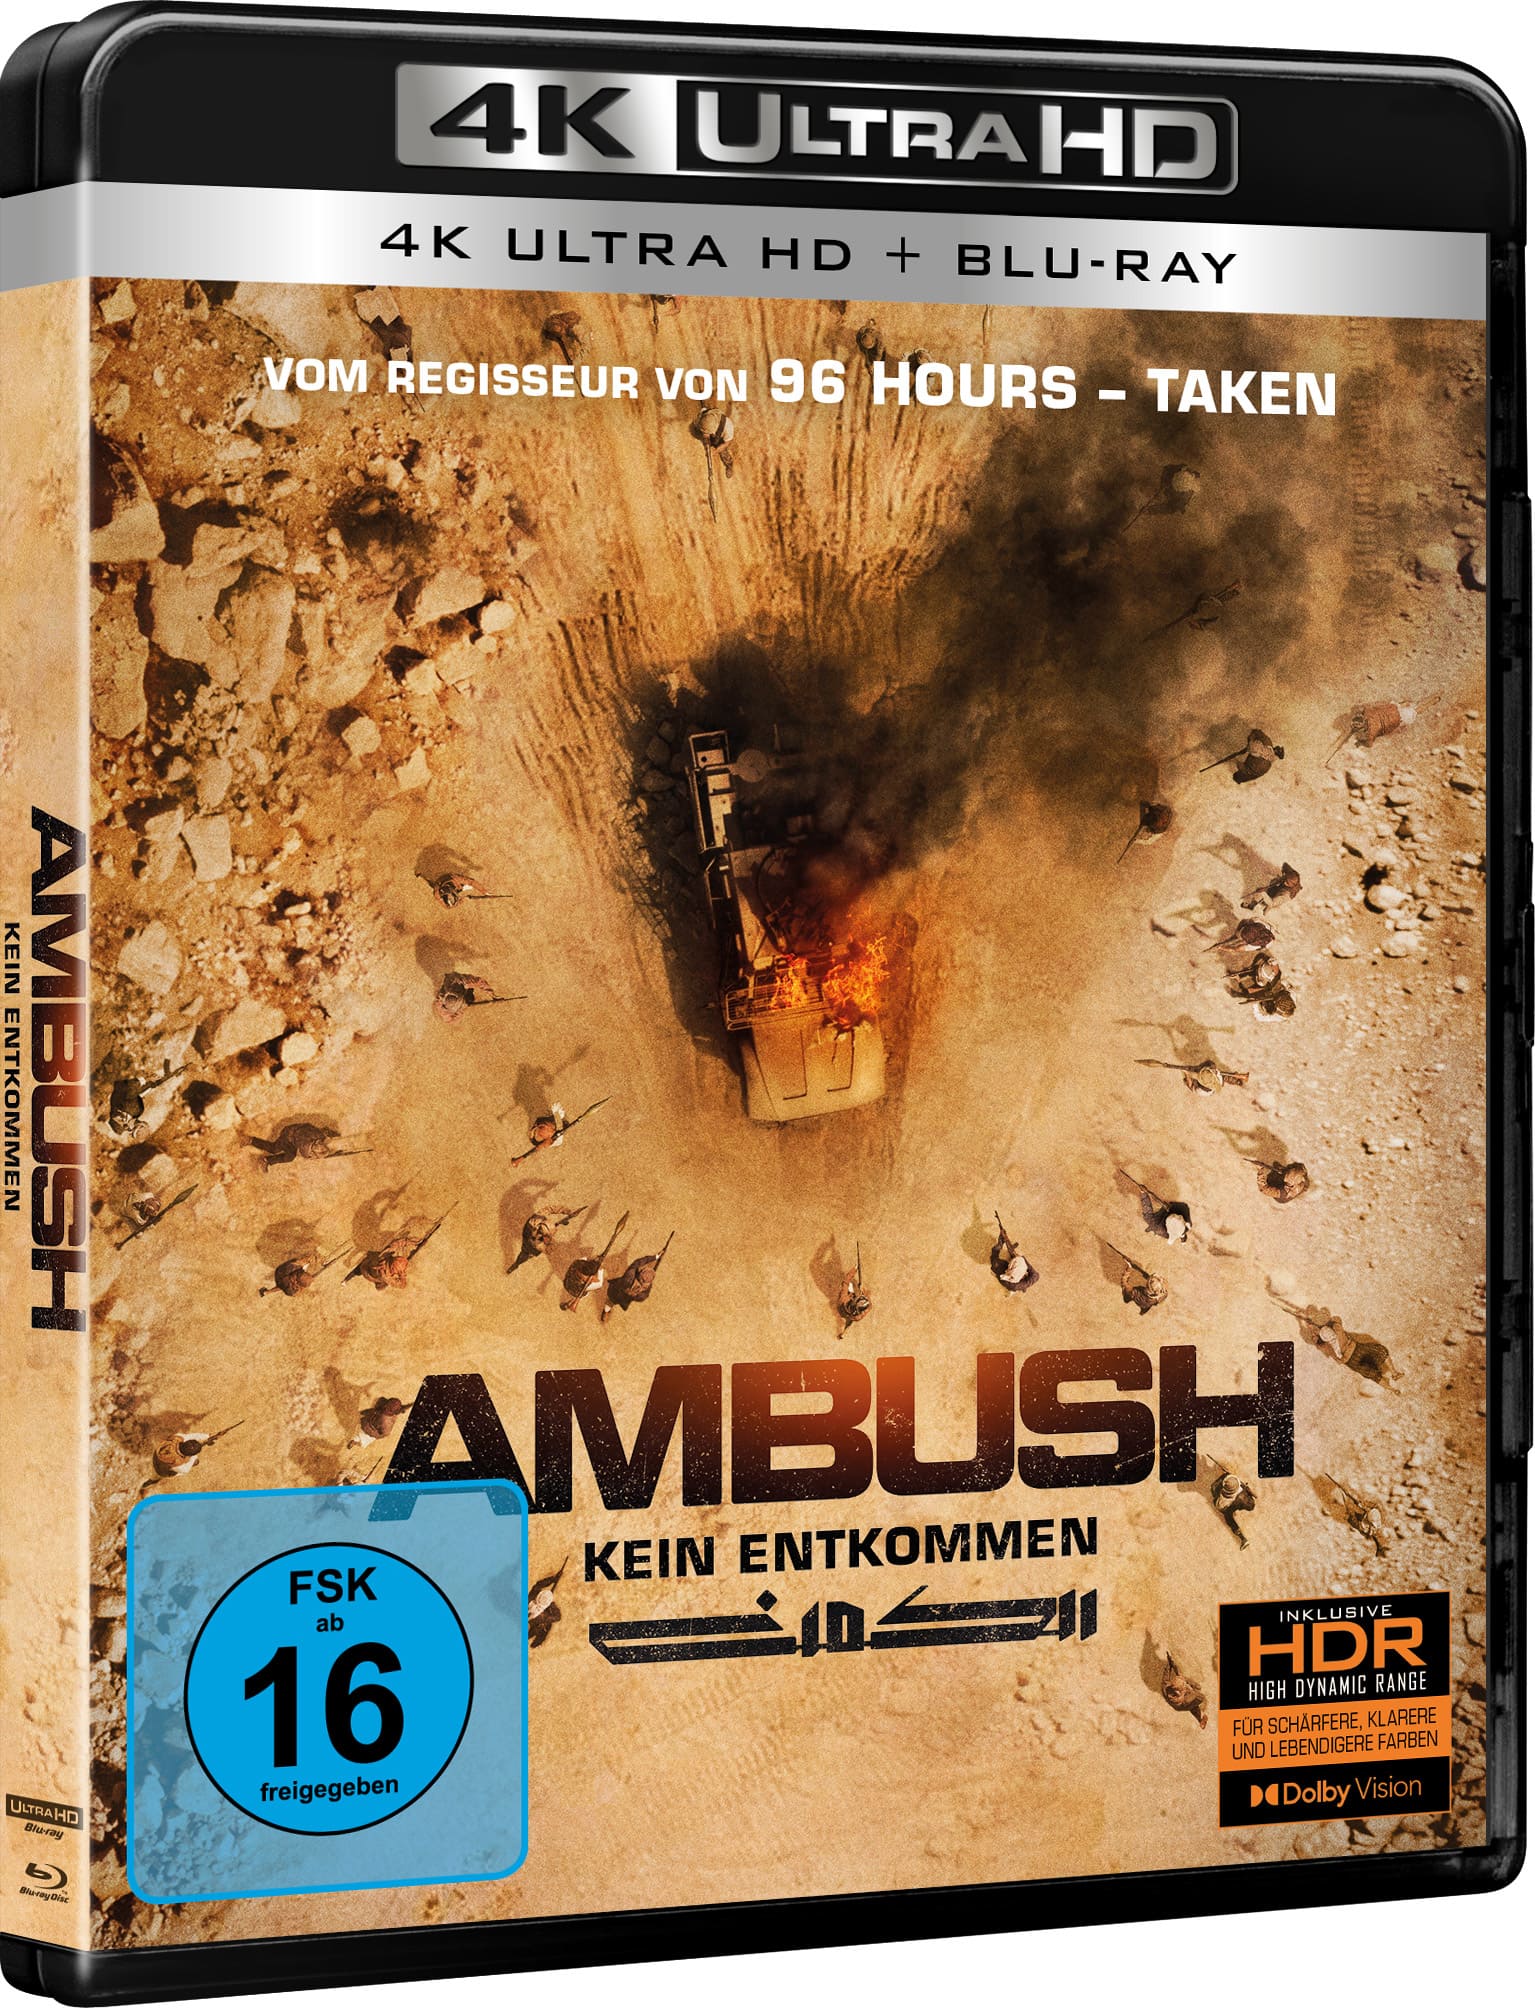 Ambush - Kein Entkommen (4K-UHD+Blu-ray) Image 2